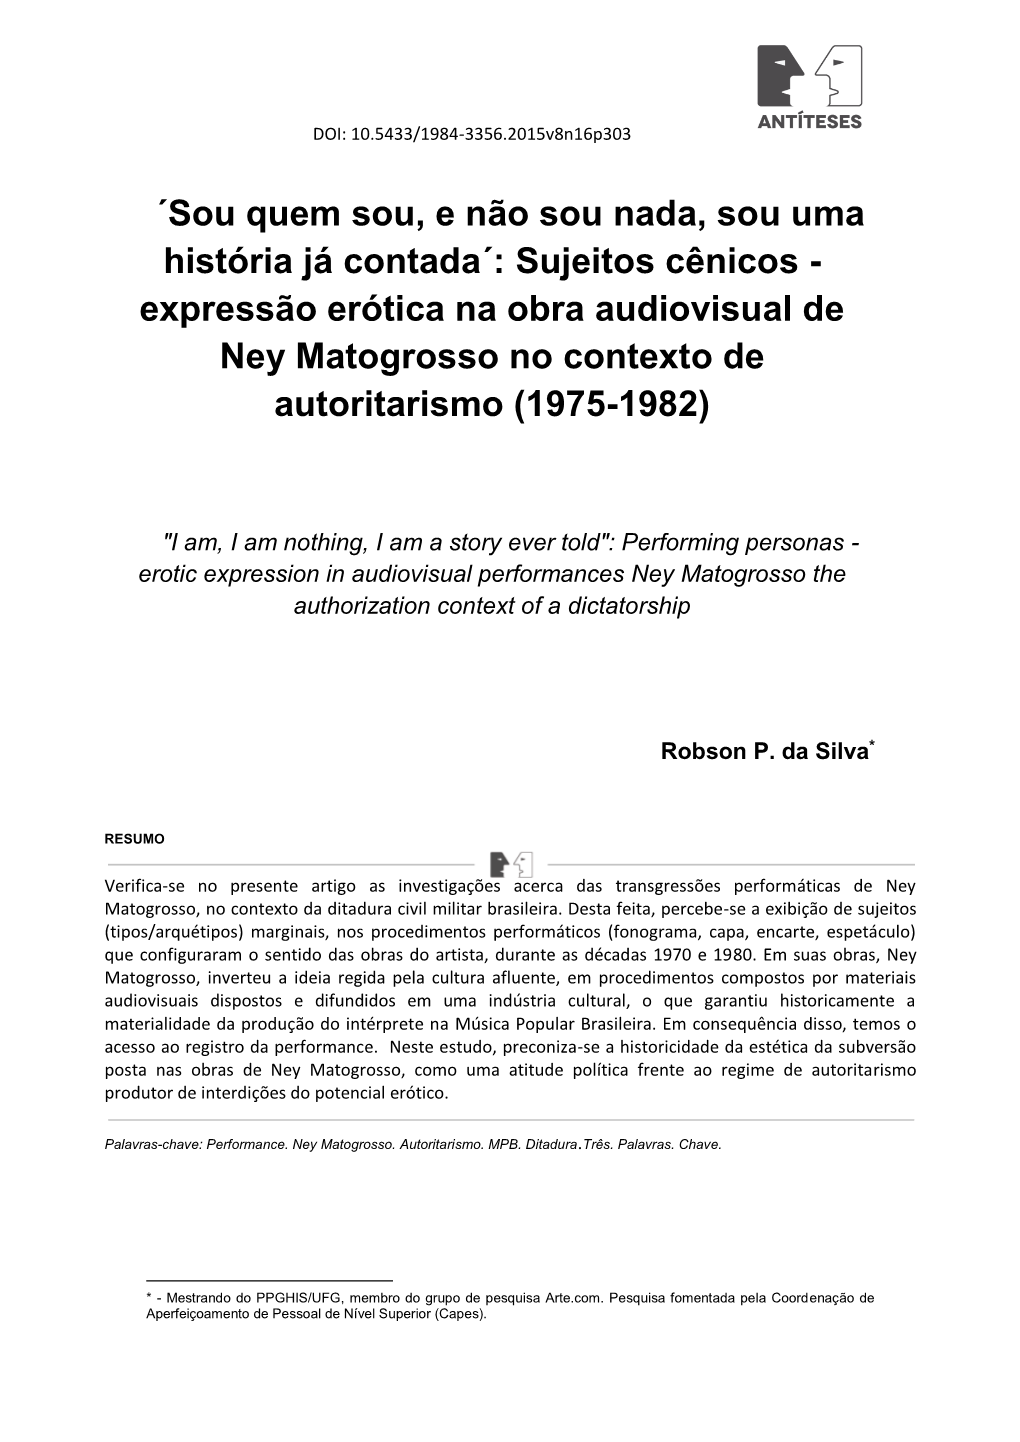 Sujeitos Cênicos - Expressão Erótica Na Obra Audiovisual De Ney Matogrosso No Contexto De Autoritarismo (1975-1982)